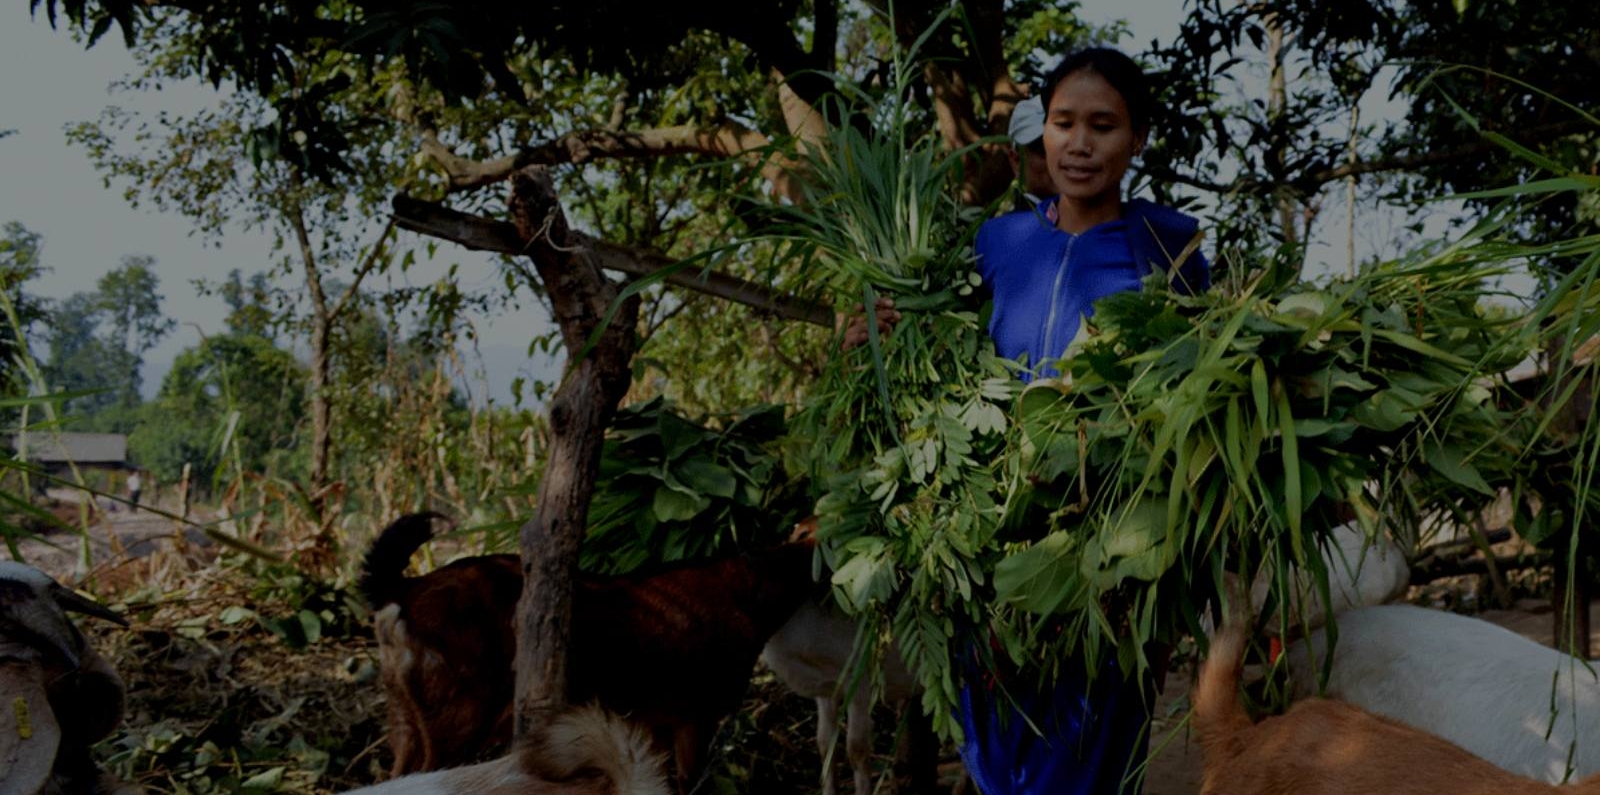 Female farmer in Nepal